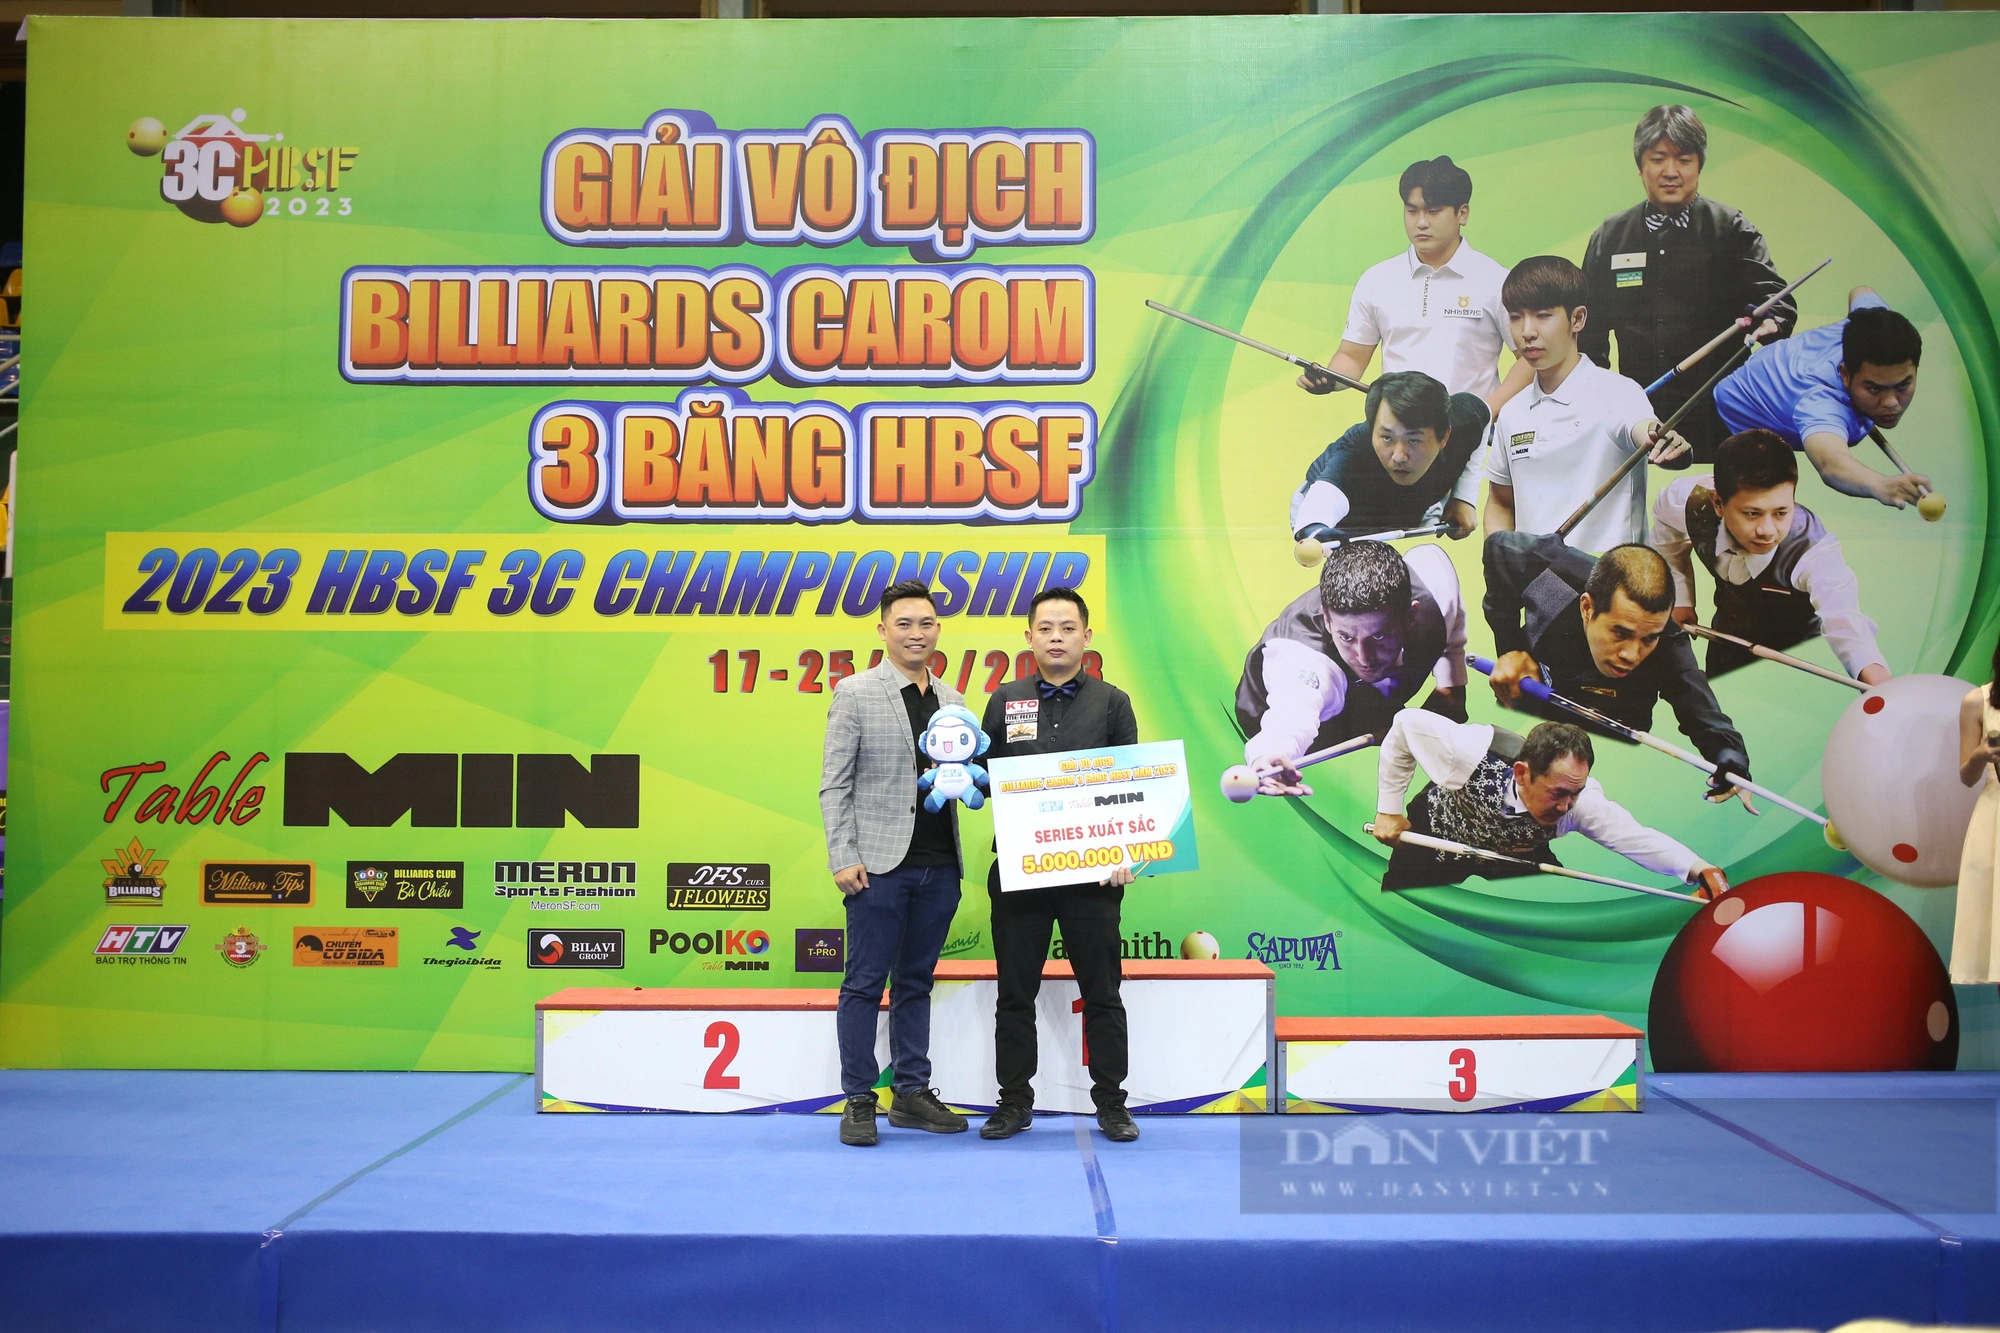 Nhà vô địch SEA Games Nguyễn Trần Thanh Tự lên ngôi tại giải Billiards Carom 3 băng HBSF  - Ảnh 5.